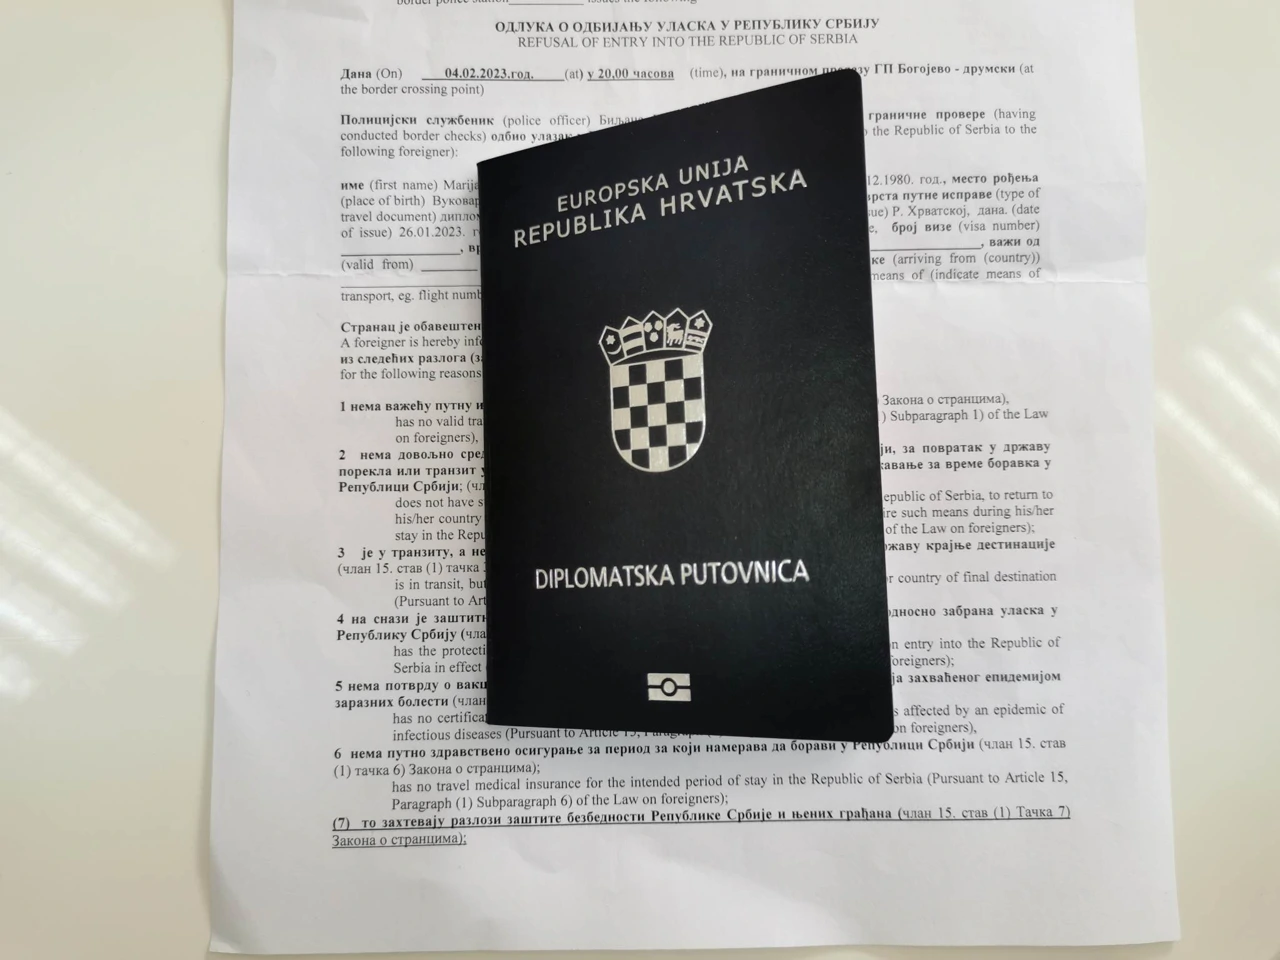 Hrvatska uputila prosvjednu notu Srbiji, Foto: Ines Krešić Milanković/HRT